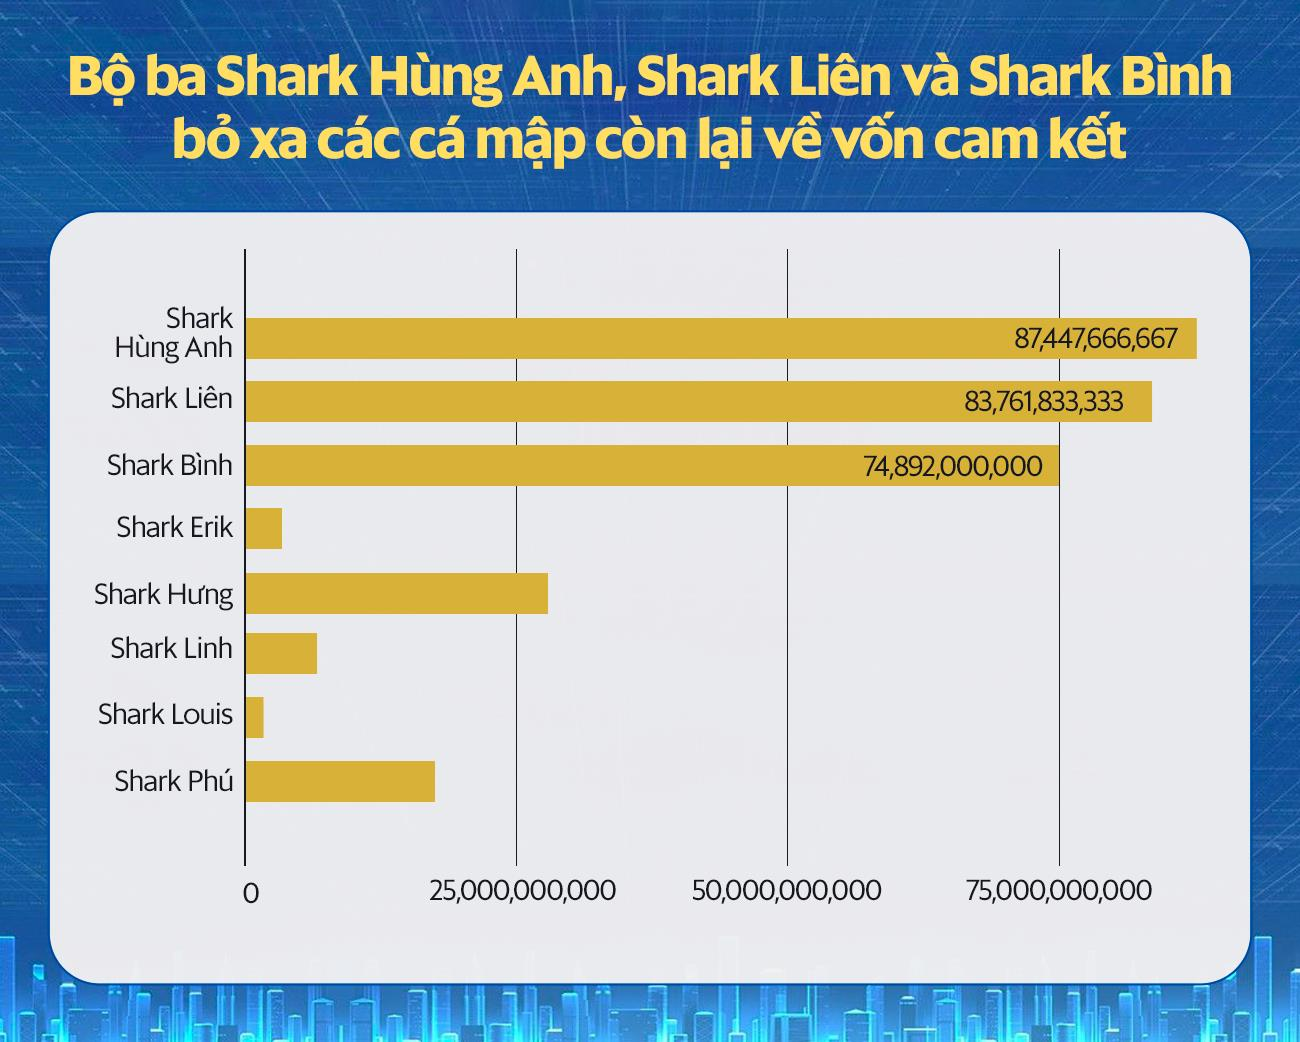 Shark Hưng nói gì khi được hỏi lý do tỷ lệ đầu tư thật quá thấp so với cam kết trên Shark Tank? - Ảnh 1.